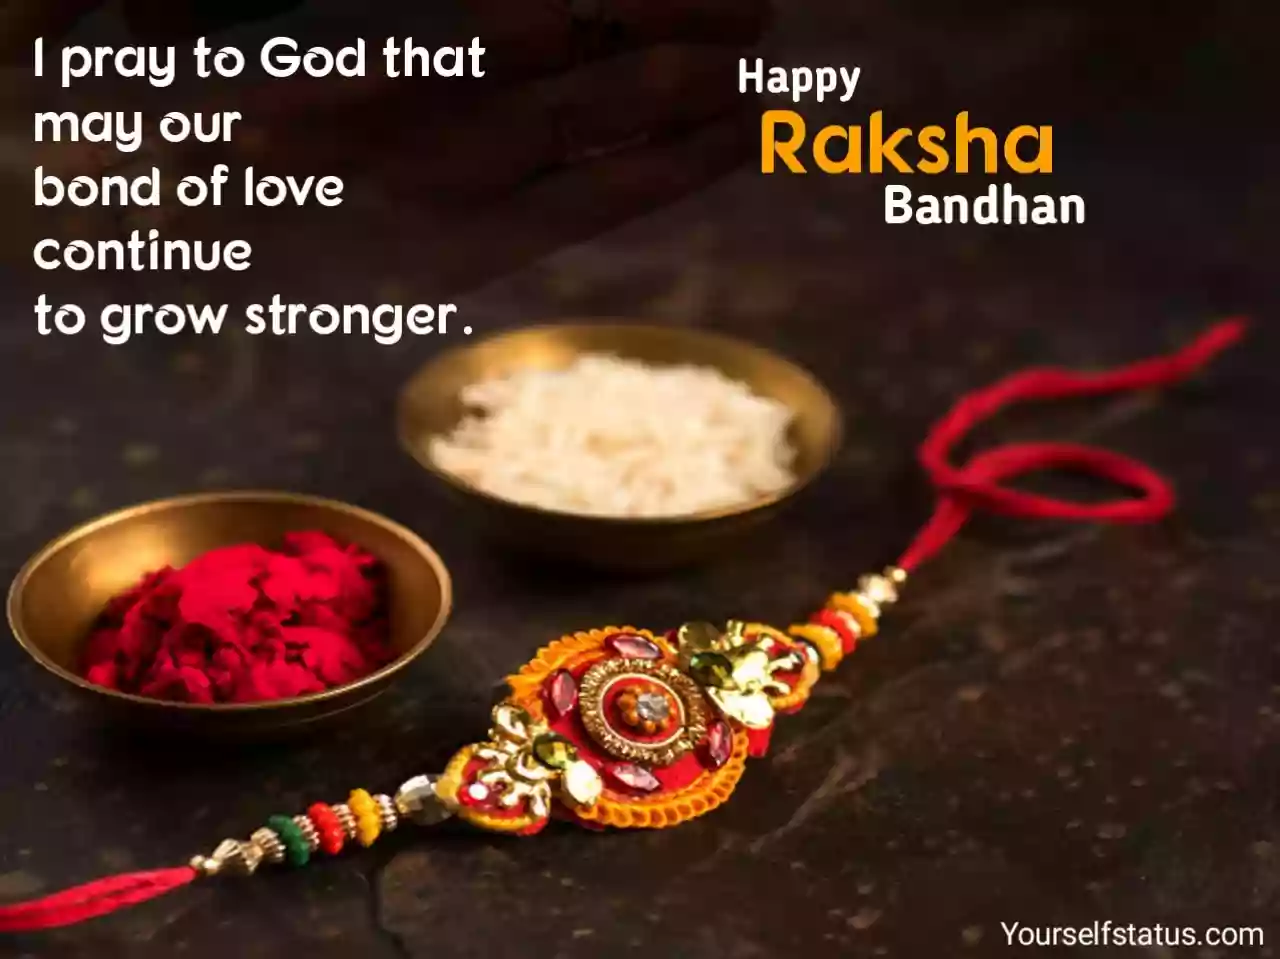 Raksha bandhan messages in english